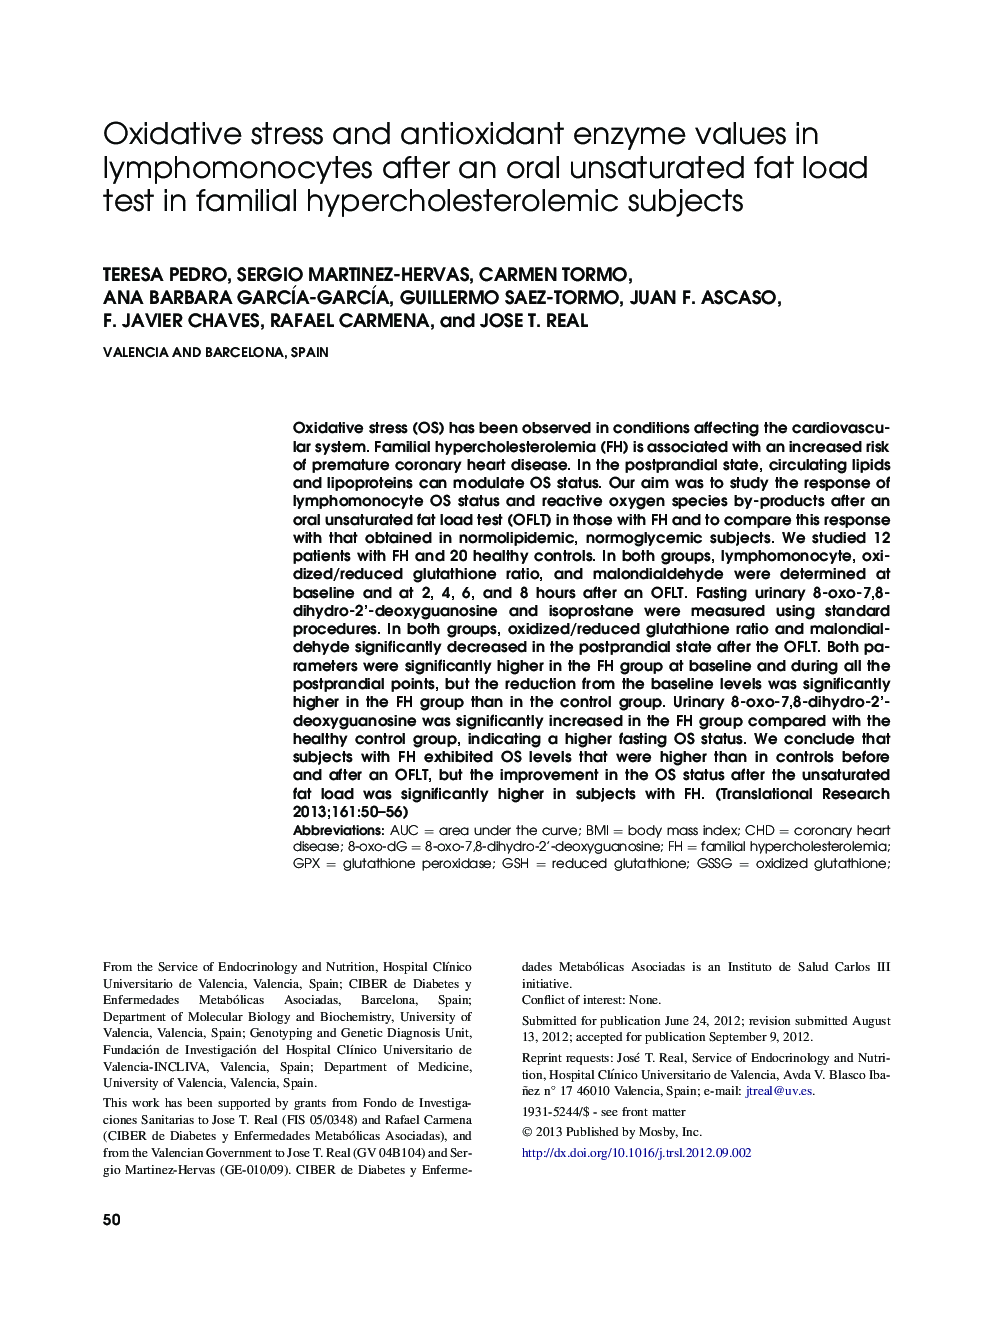 استرس اکسیداتیو و آنزیم های آنتی اکسیدان در لنفومونوسیت ها پس از آزمایش بارگذاری چربی غیر اشباع چربی در افراد هیپرکلسترولمی خانوادگی 